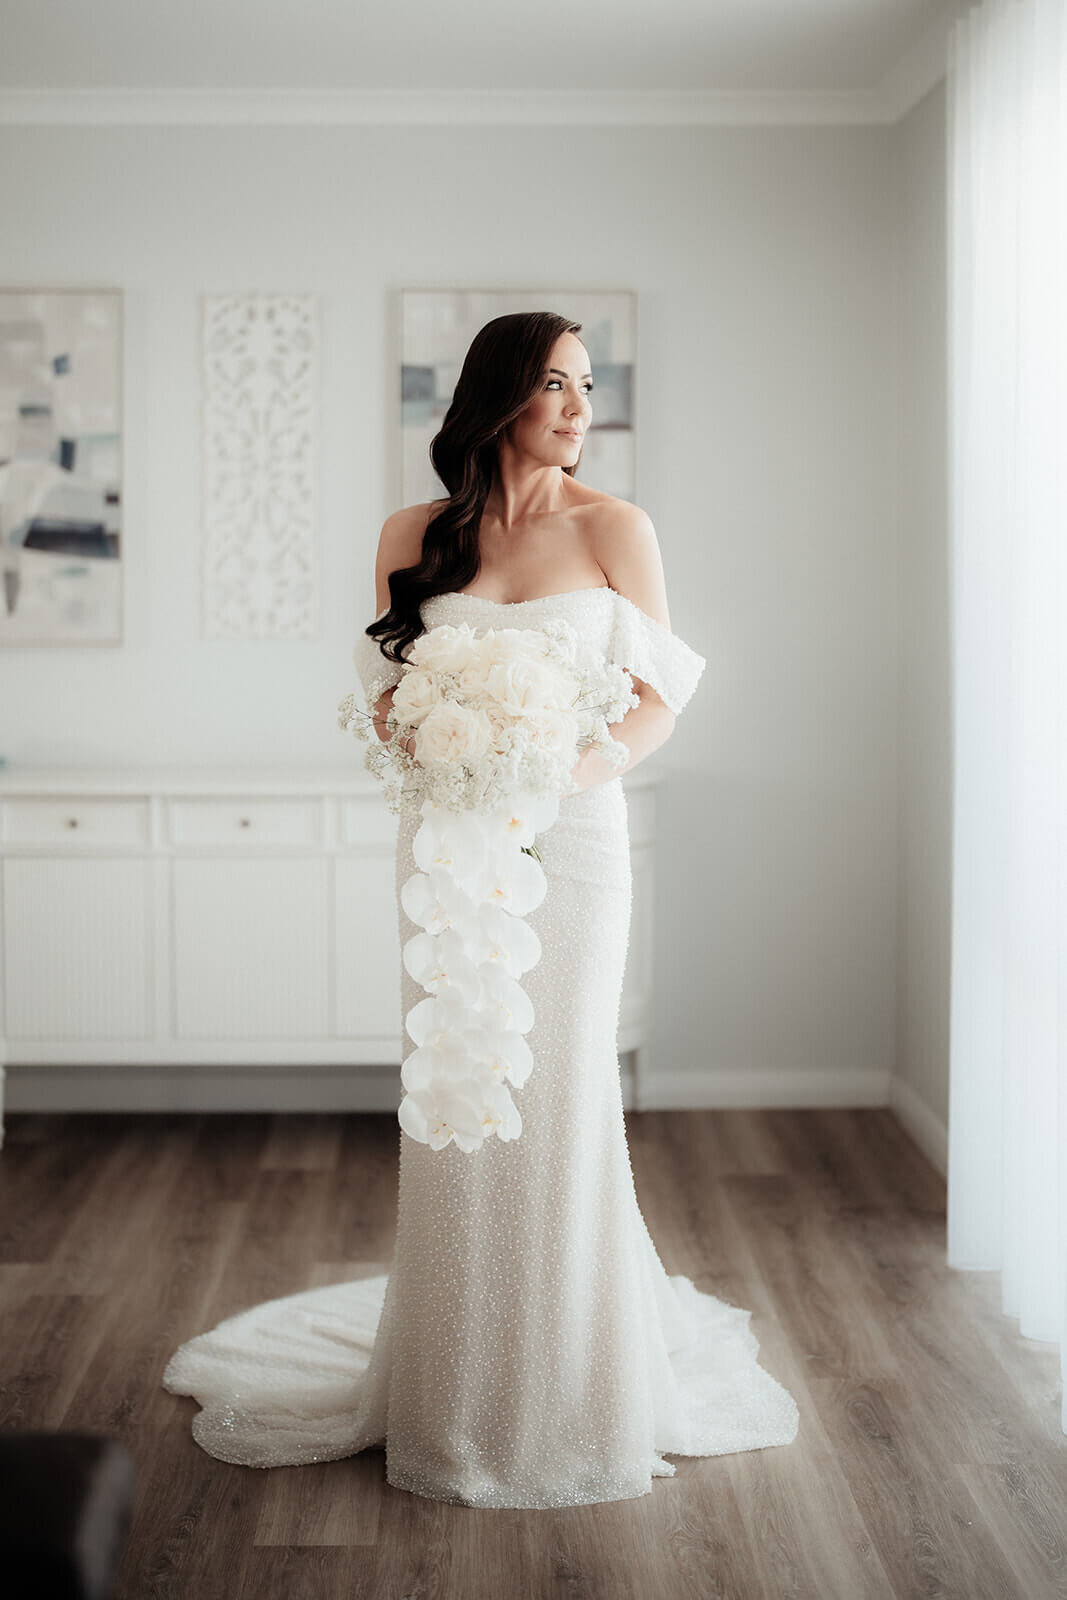 Bride standing in wedding dress